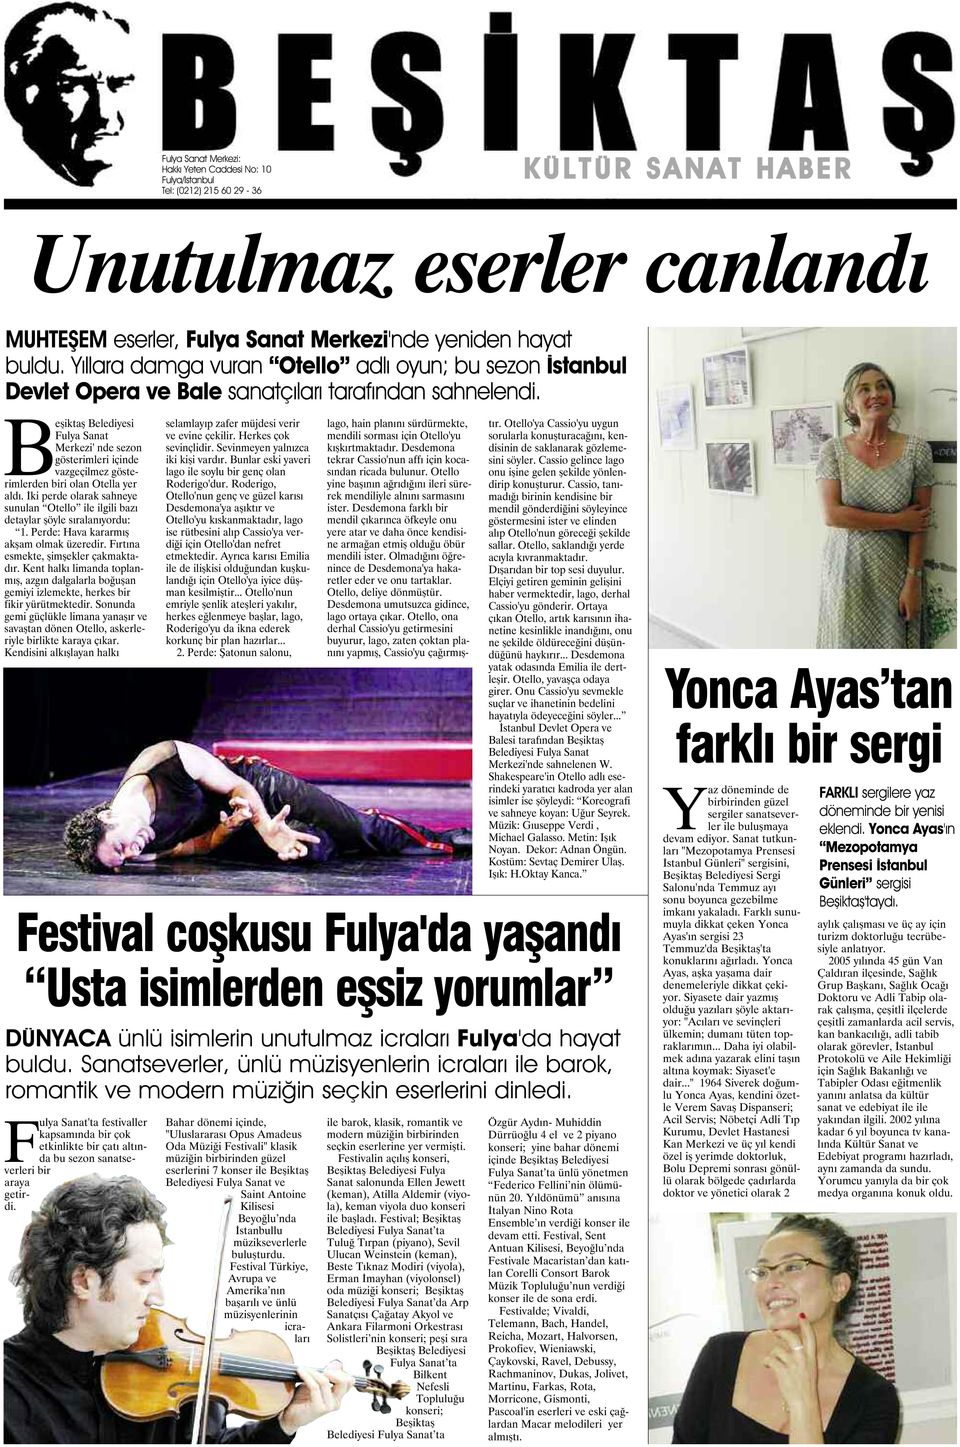 Beşiktaş Belediyesi Fulya Sanat Merkezi' nde sezon gösterimleri içinde vazgeçilmez gösterimlerden biri olan Otella yer aldı.